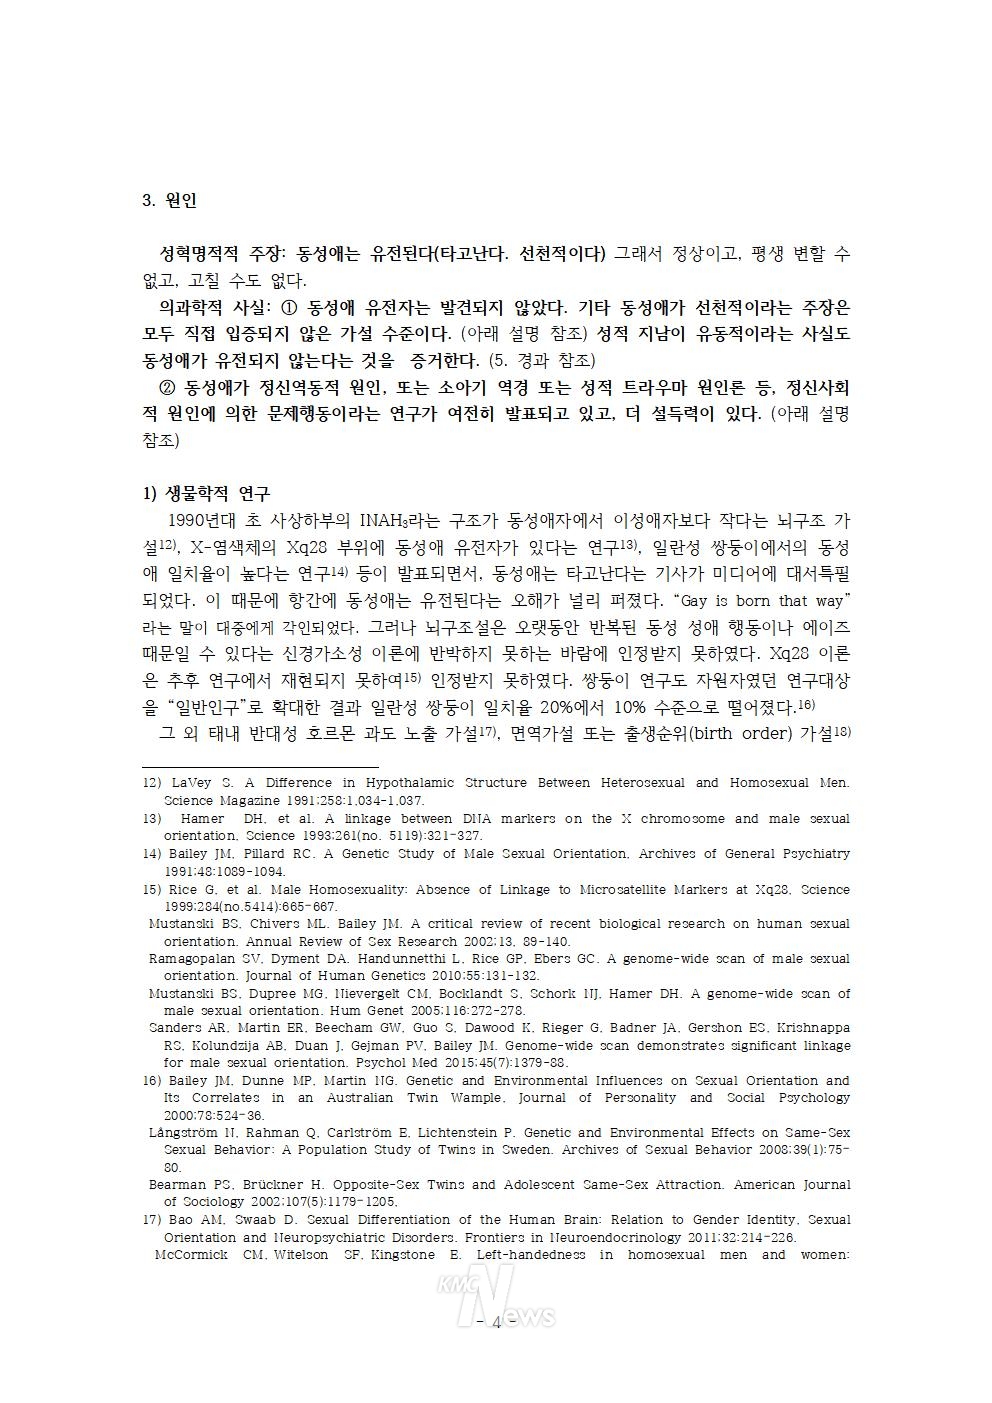 민성길 원장 강연 전문 / LGBT+ 의학